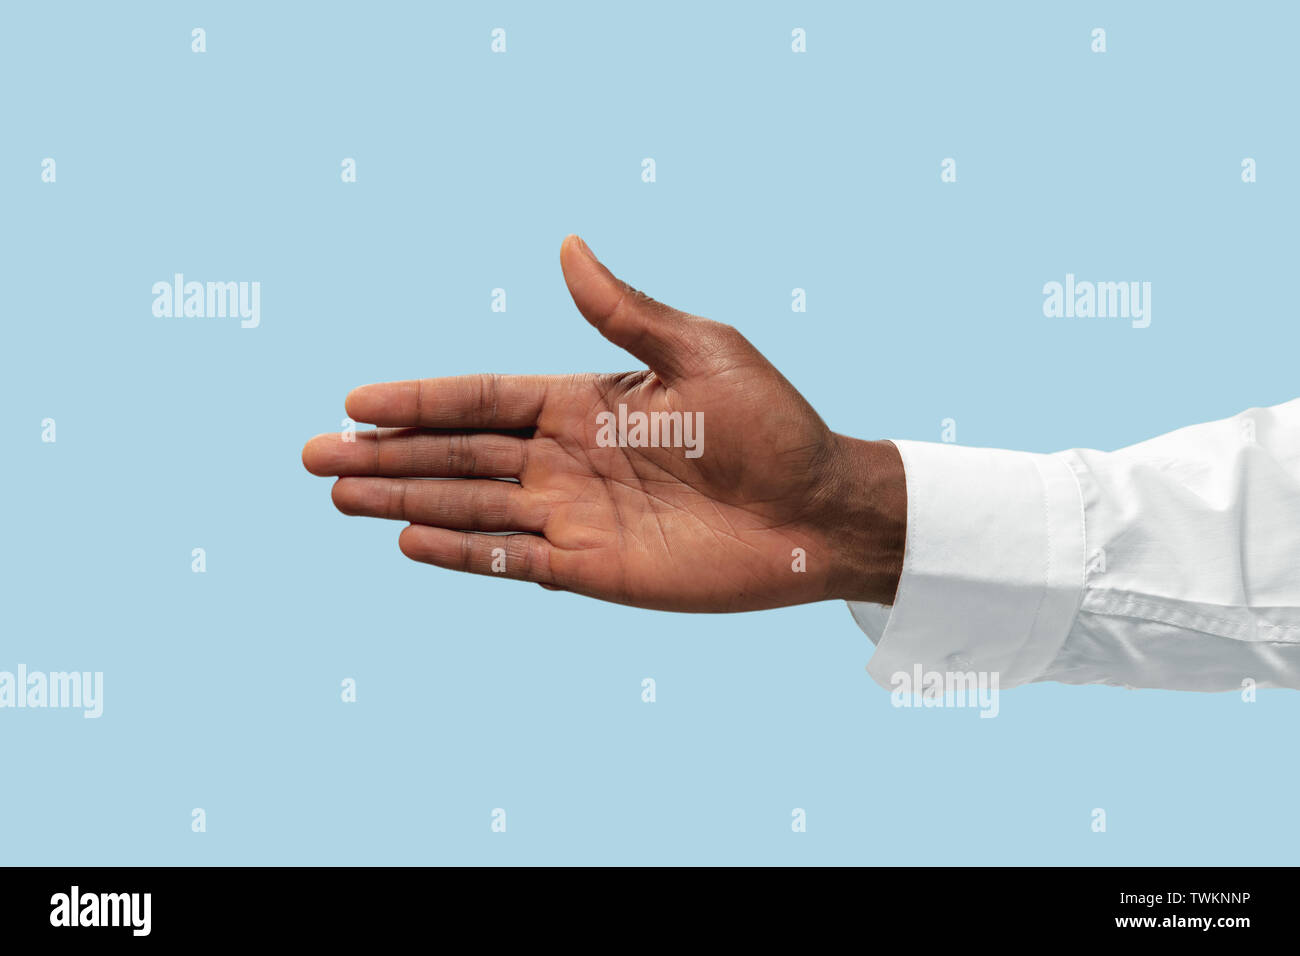 Hombre mano en camisa blanca demostrando un gesto de invitar o apuntando aislado sobre fondo azul studio. Concepto de negocio, oficina, trabajo. Negative Space para insertar el texto o la imagen. Foto de stock